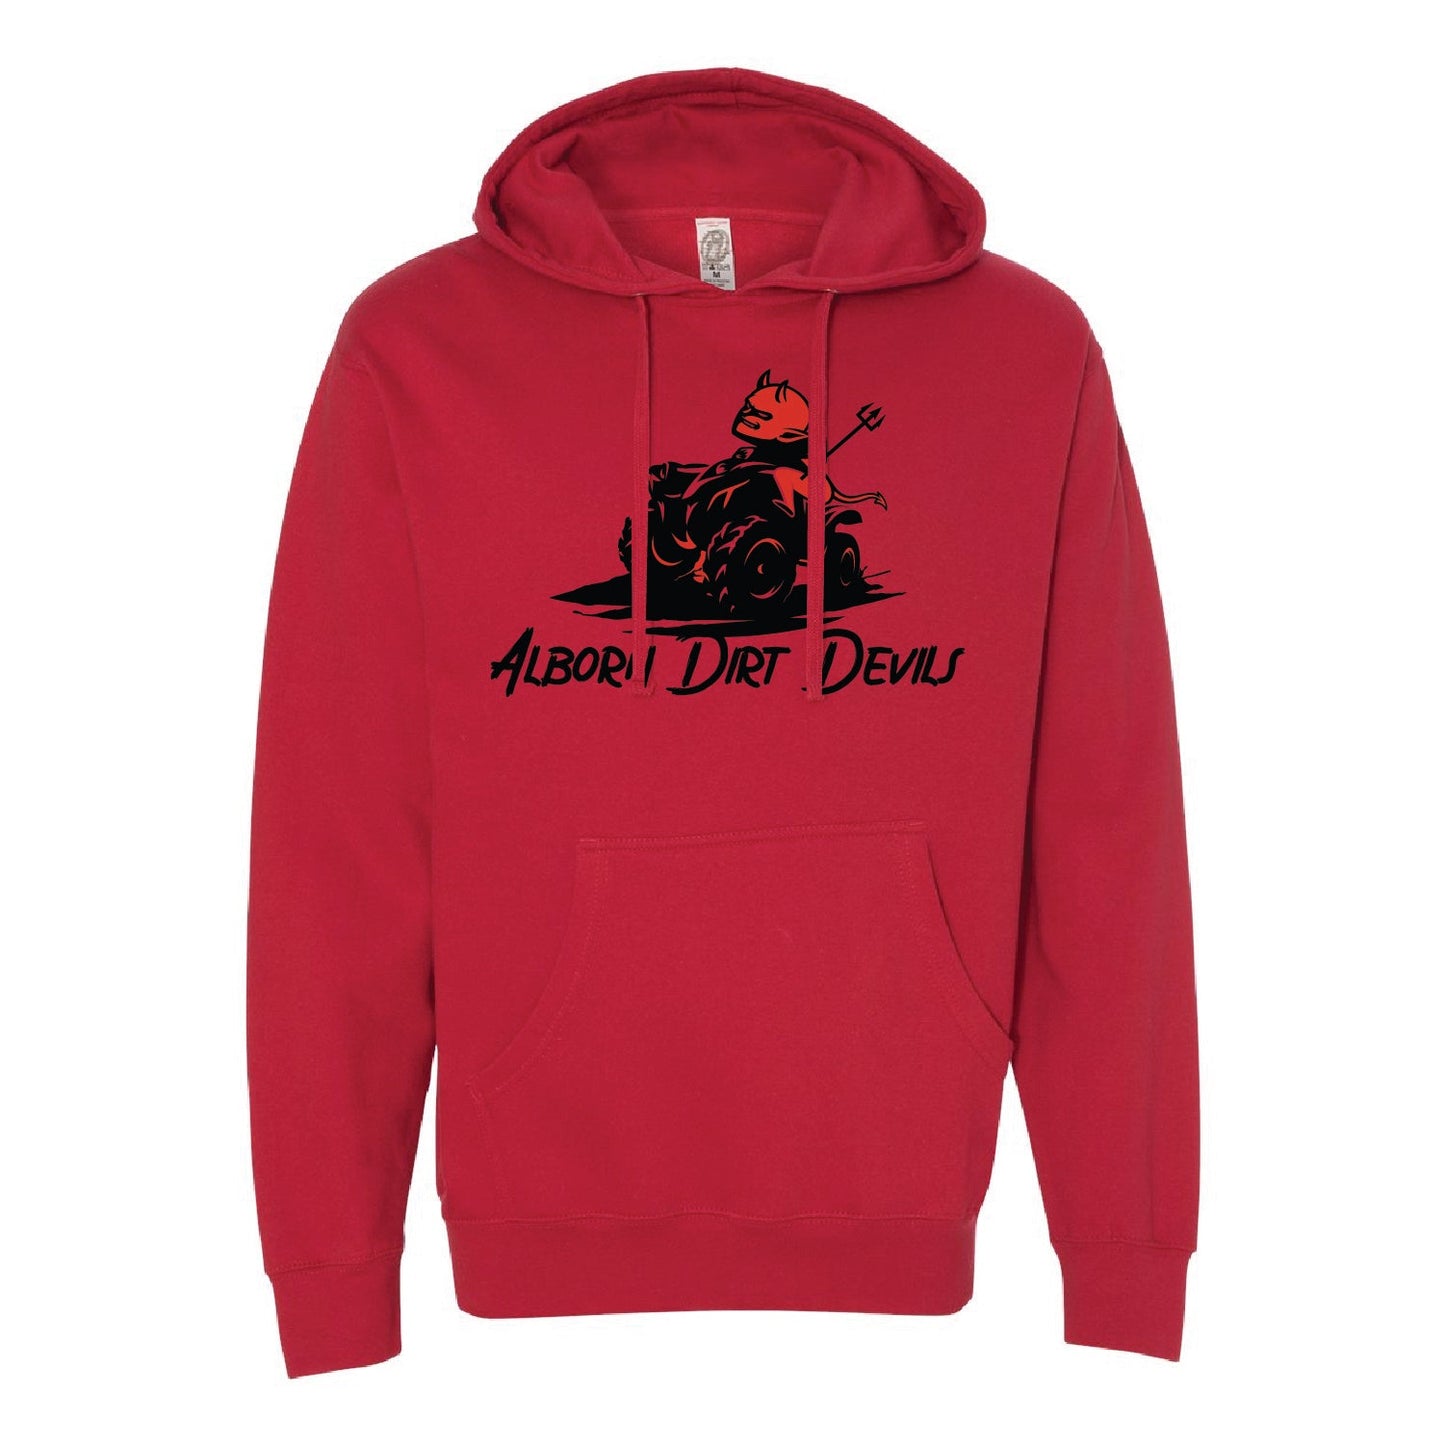 Alborn Dirt Devils Unisex Midweight Hooded Sweatshirt - DSP On Demand